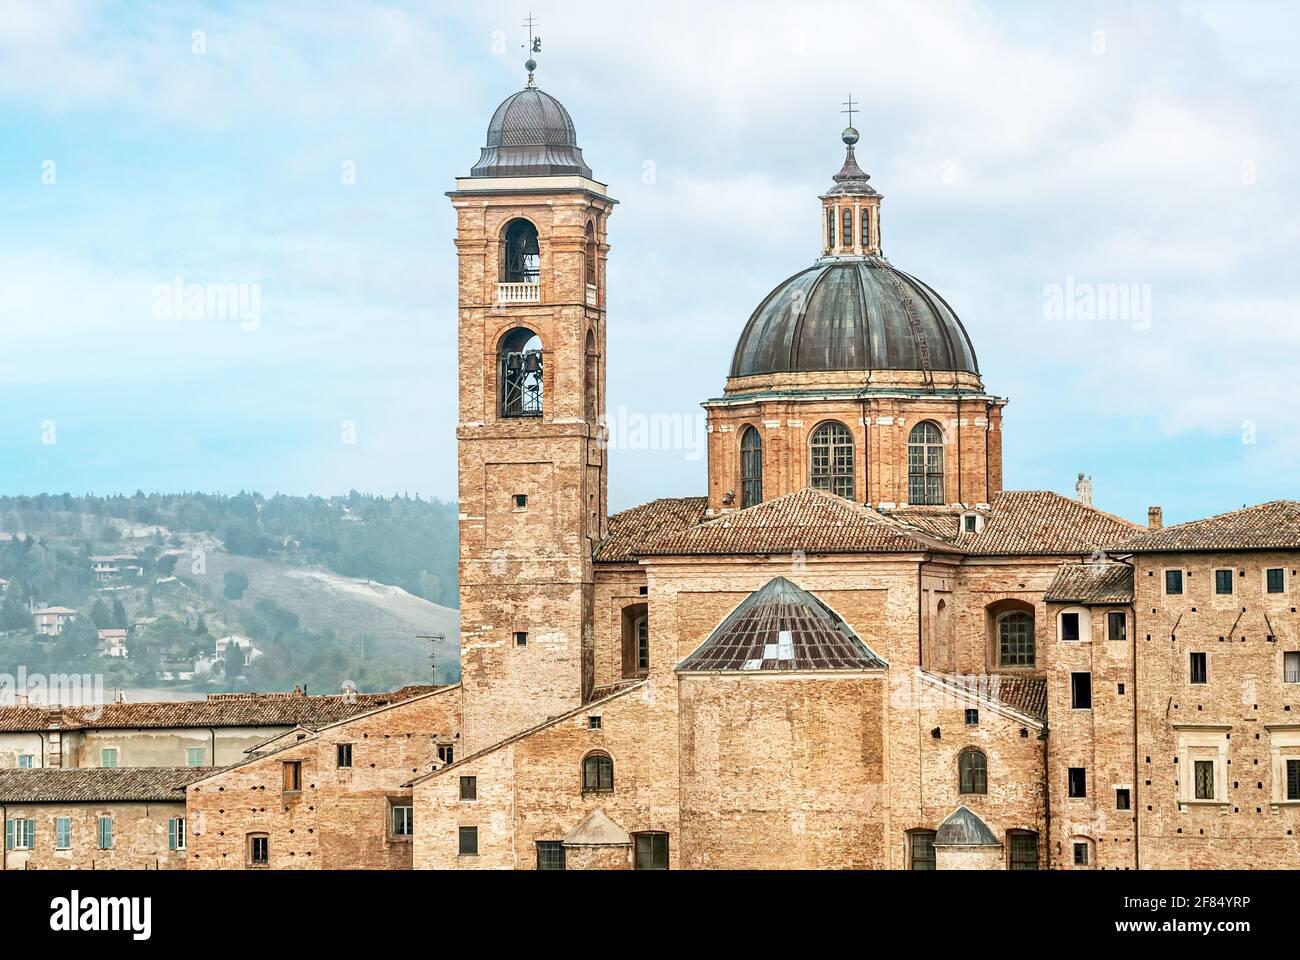 Duomo d'Urbino (cathédrale), Marche, Italie, fondée en 1021 sur un édifice religieux du 6ème siècle. Banque D'Images